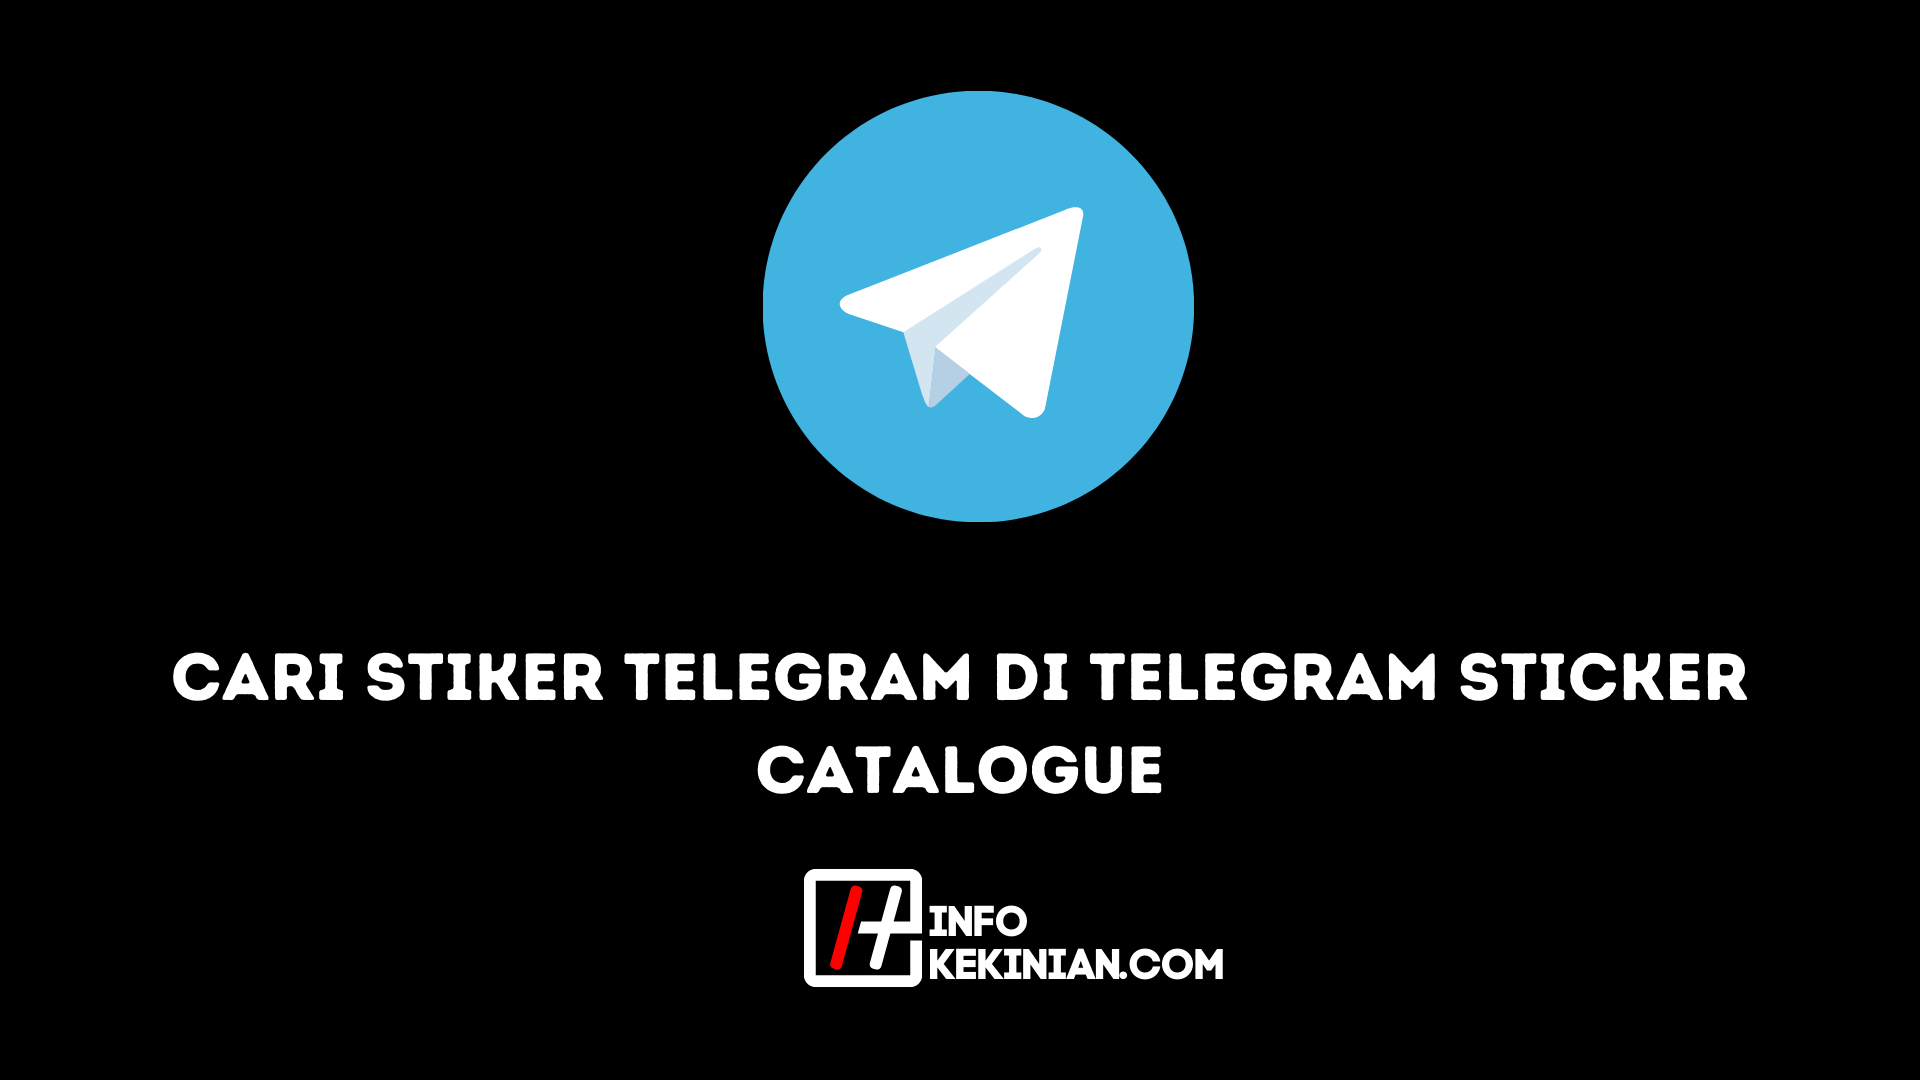 Cari Stiker Telegram di Telegram Sticker Catalogue